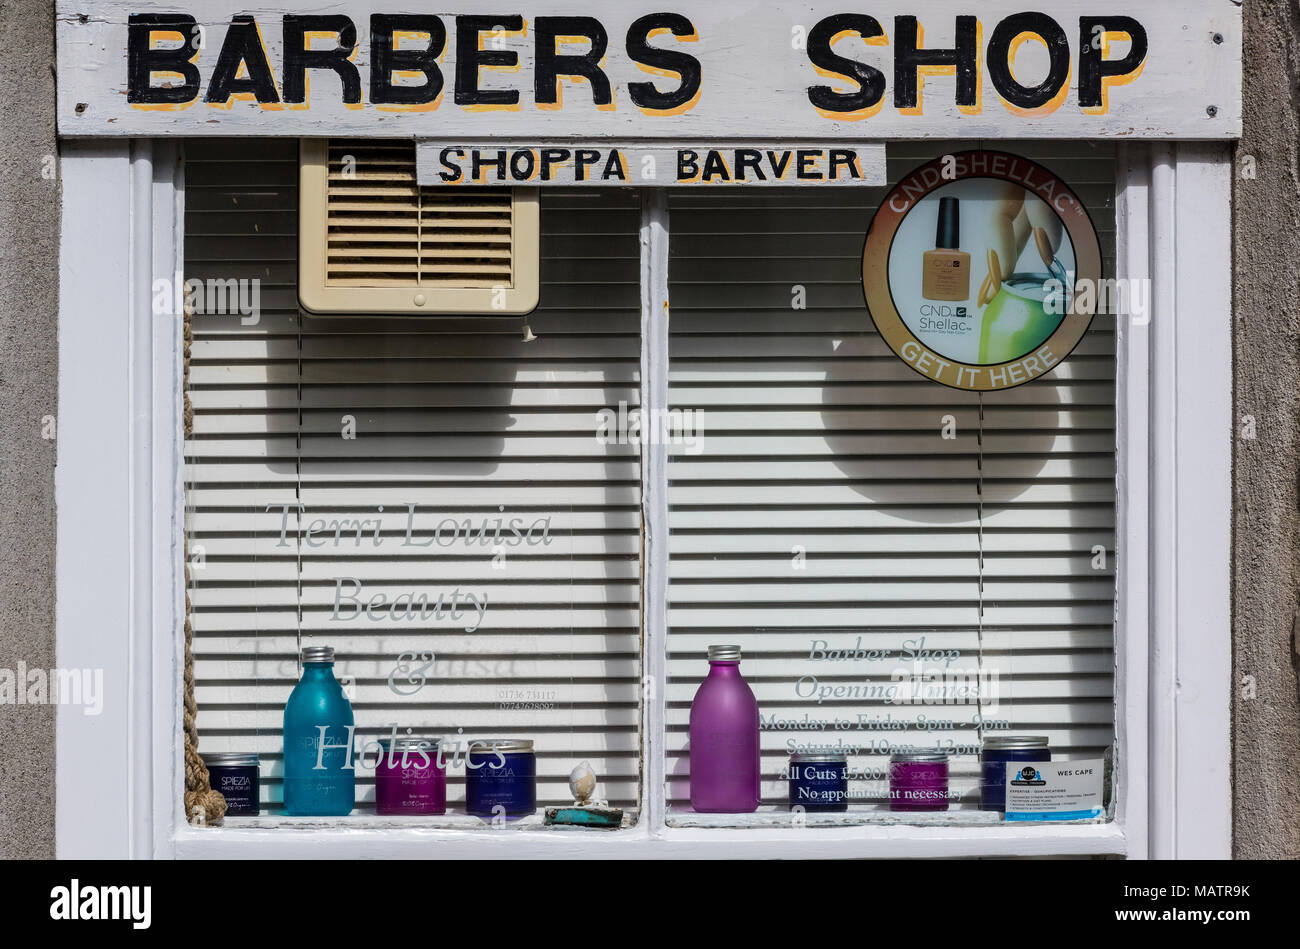 La vetrina di un negozio di barbiere in un edificio tradizionale in st Ives in Cornovaglia occidentale. il taglio di capelli e saloni con pubblicità in dialetto locale Cornovaglia Foto Stock